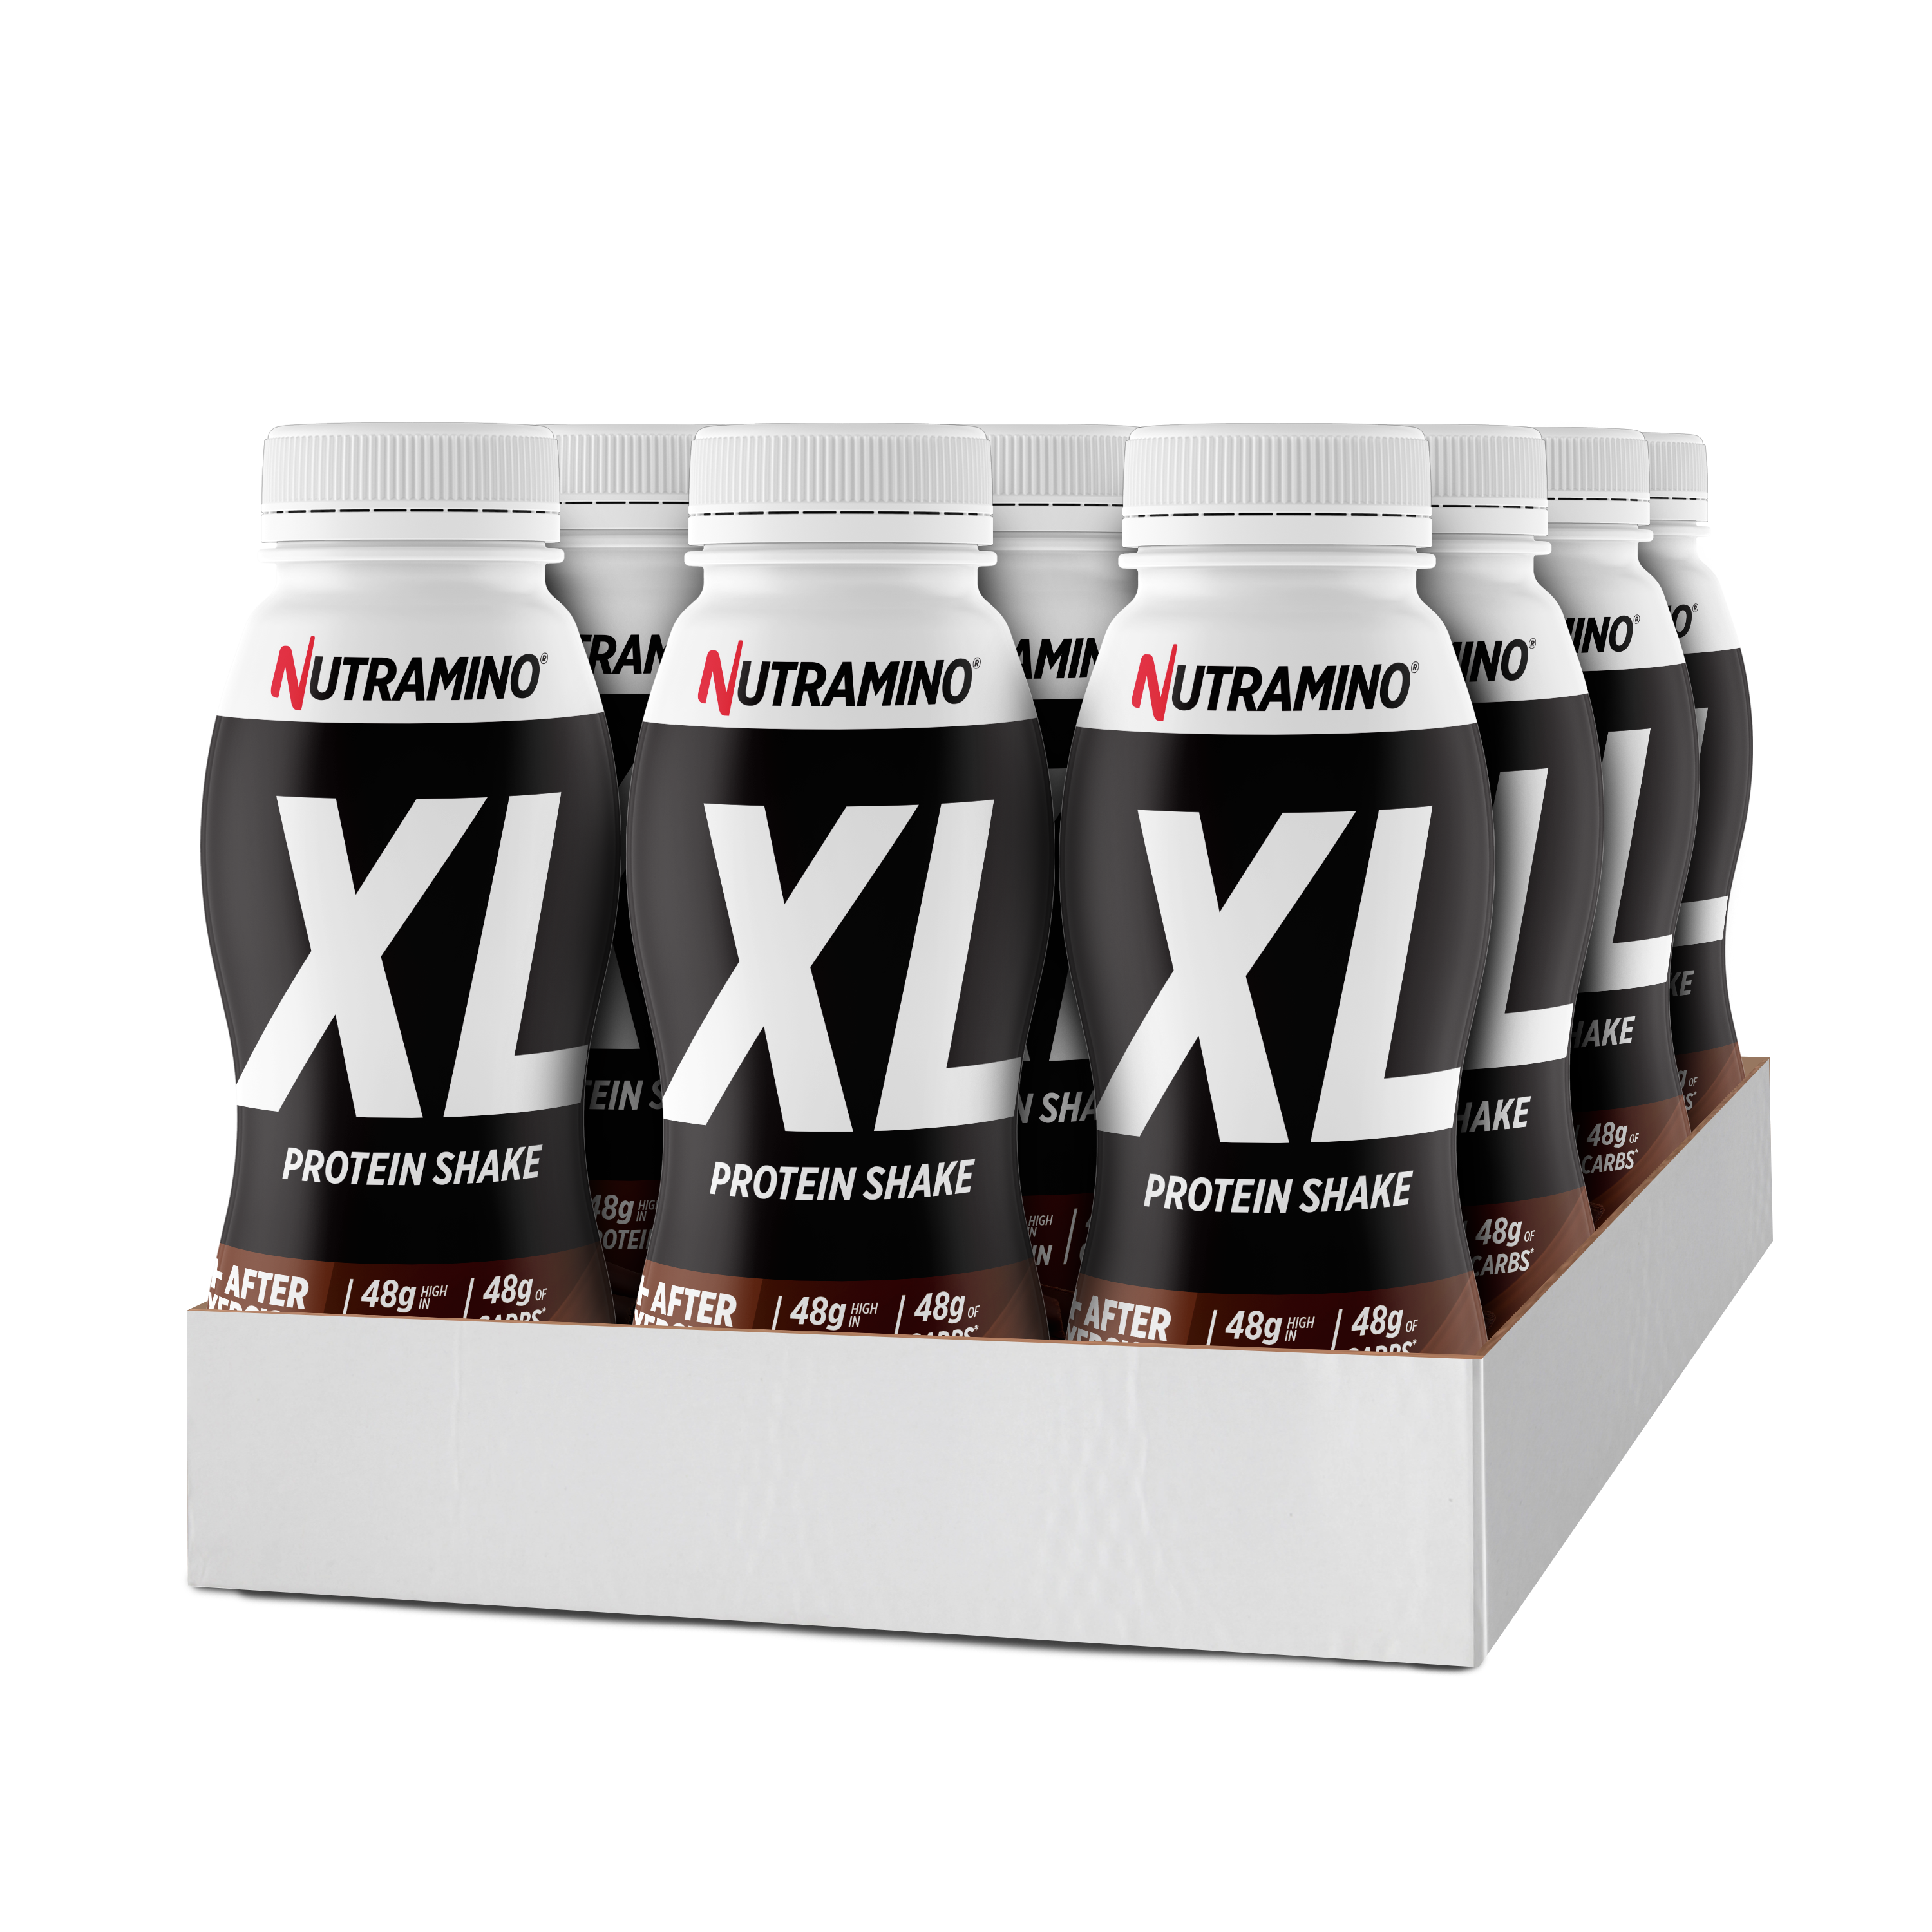 Brug Nutramino XL Protein Shake - Chocolate (12x 475ml) til en forbedret oplevelse